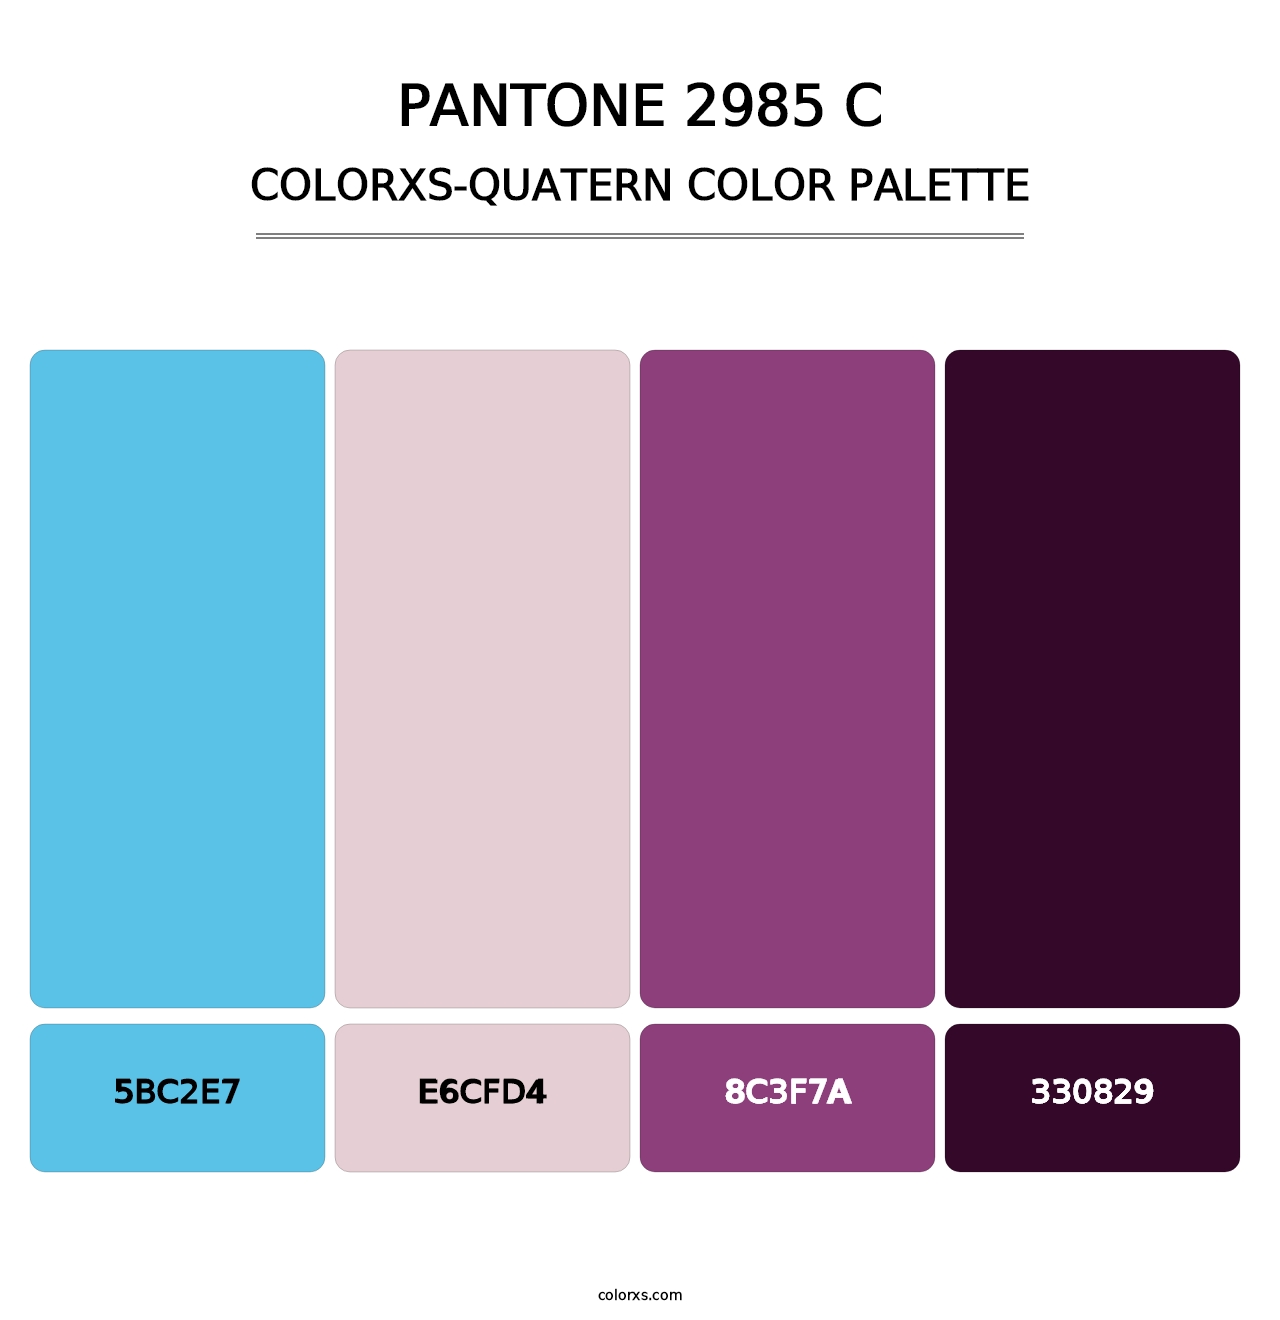 PANTONE 2985 C - Colorxs Quatern Palette